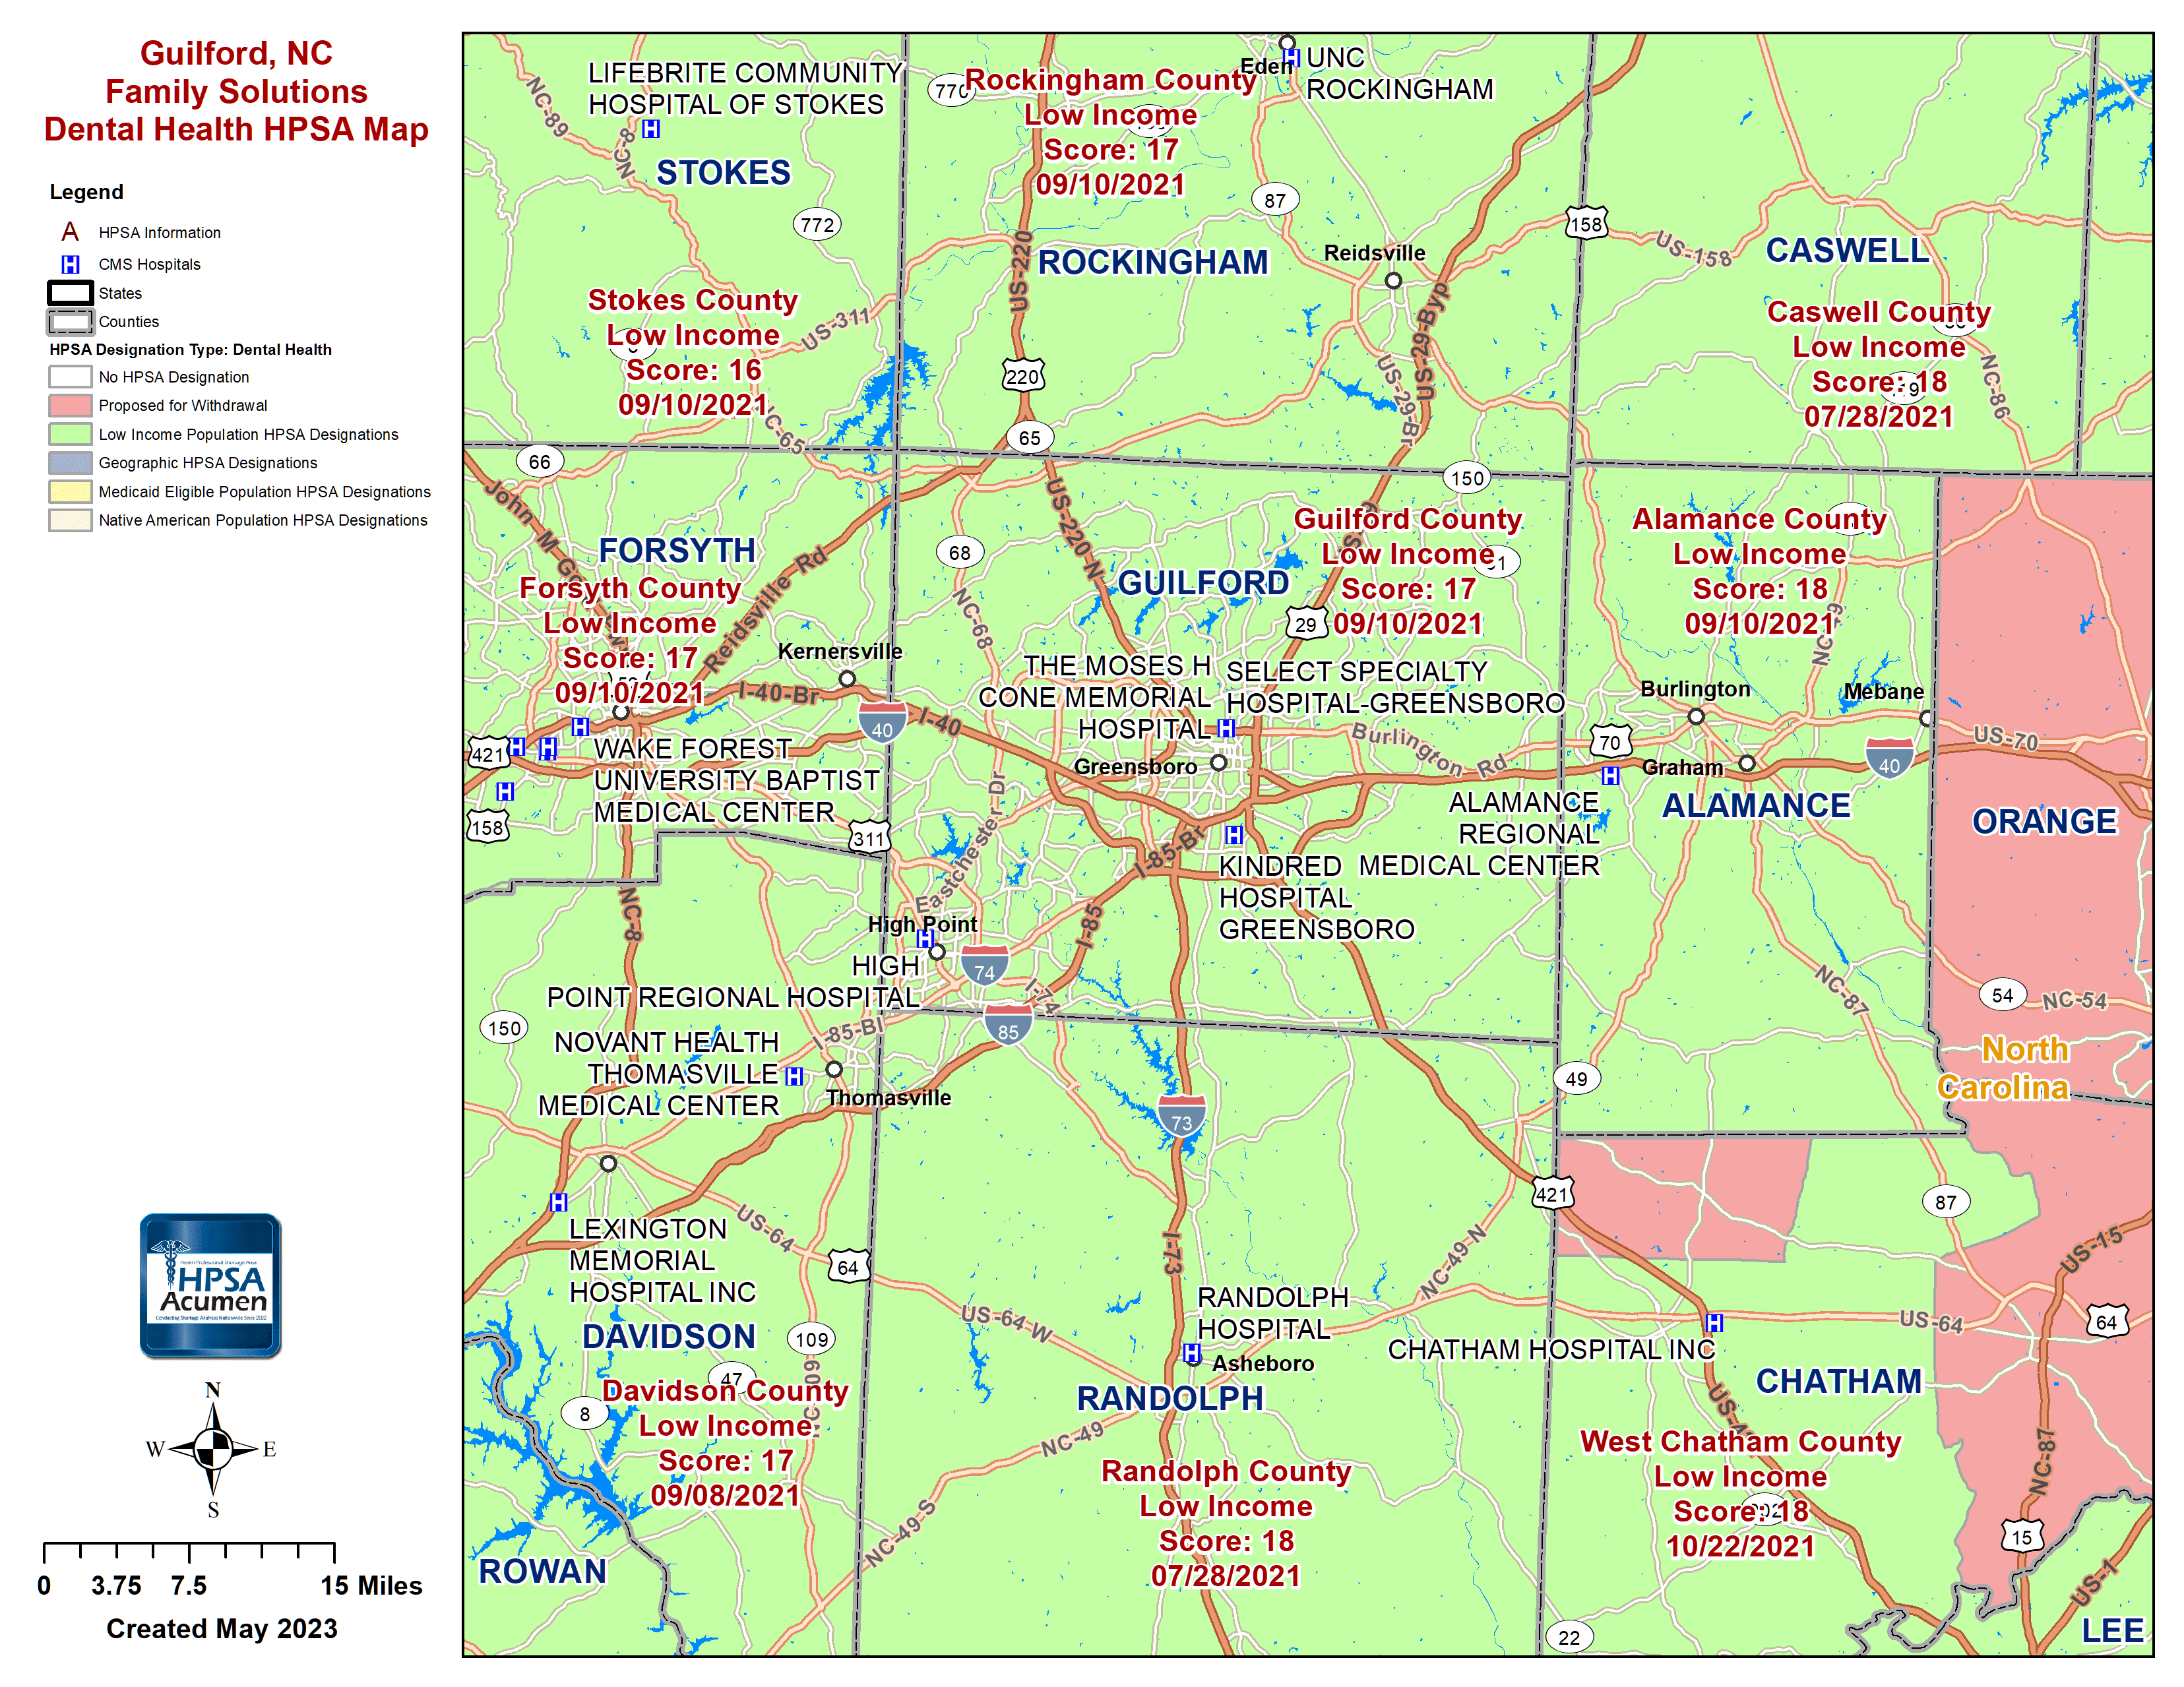 Guilford, NC DH HPSA Map